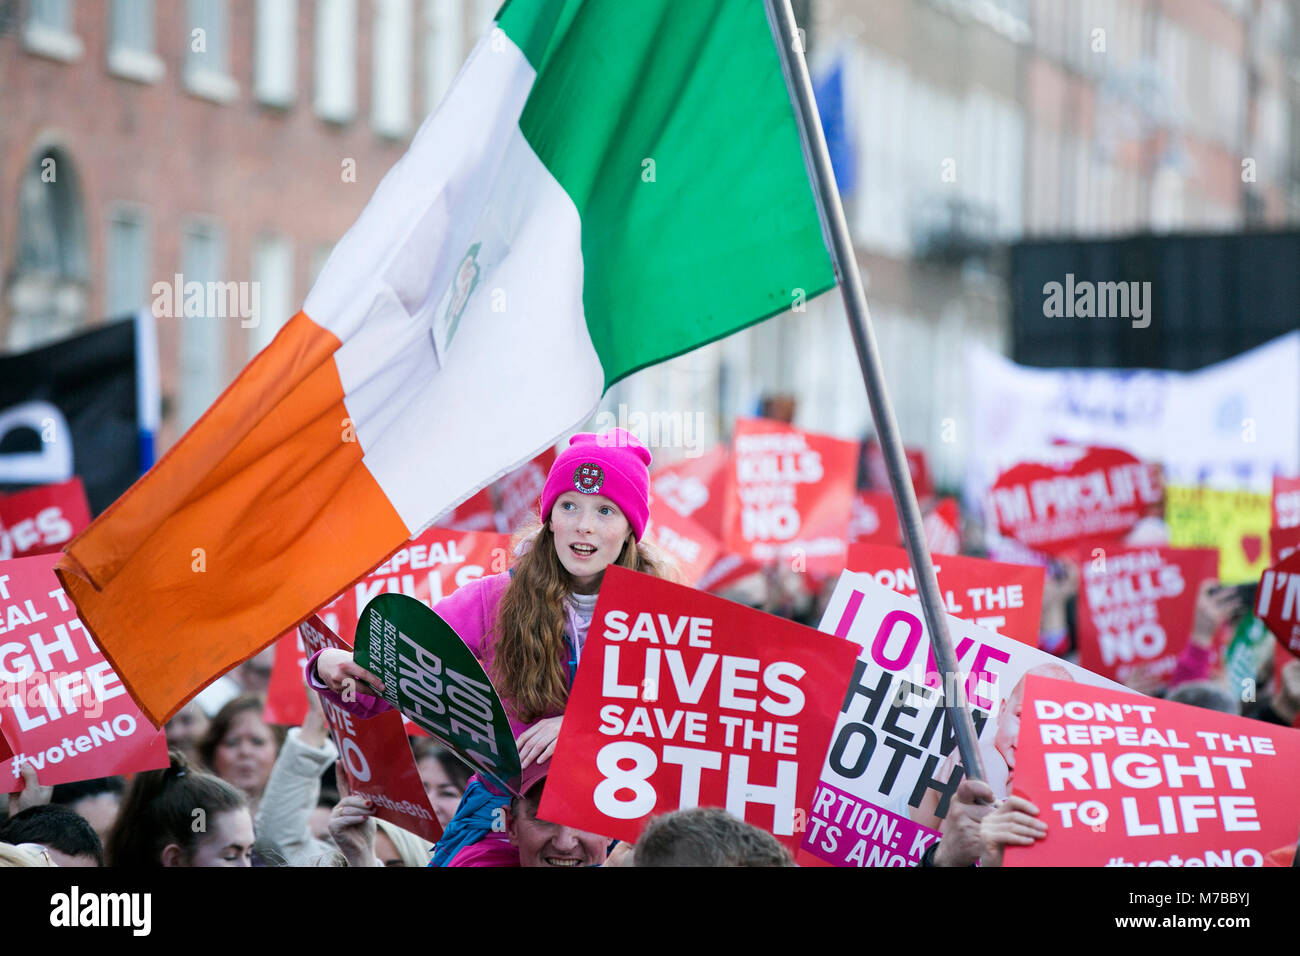 Dubin, Irlanda. Decimo Mar, 2018. Anti aborto Rally, Dublino Irlanda. Pro vita sostenitori marzo a Dublino città oggi, sul loro modo di Leinster House (Dail/Parlamento), per un incontro di massa per le strade. Decine di migliaia sono attesi per il rally che è in opposizione ai governi irlandese proposta di tenere un referendum per abrogare le otto Emendamento della Costituzione che proibisce di aborto e di sostituirlo con una legge del genere permetterebbe alle donne in gravidanza per accedere ai servizi di aborto. Foto: Sam Boal/RollingNews.ie Credito: RollingNews.ie/Alamy Live News Foto Stock